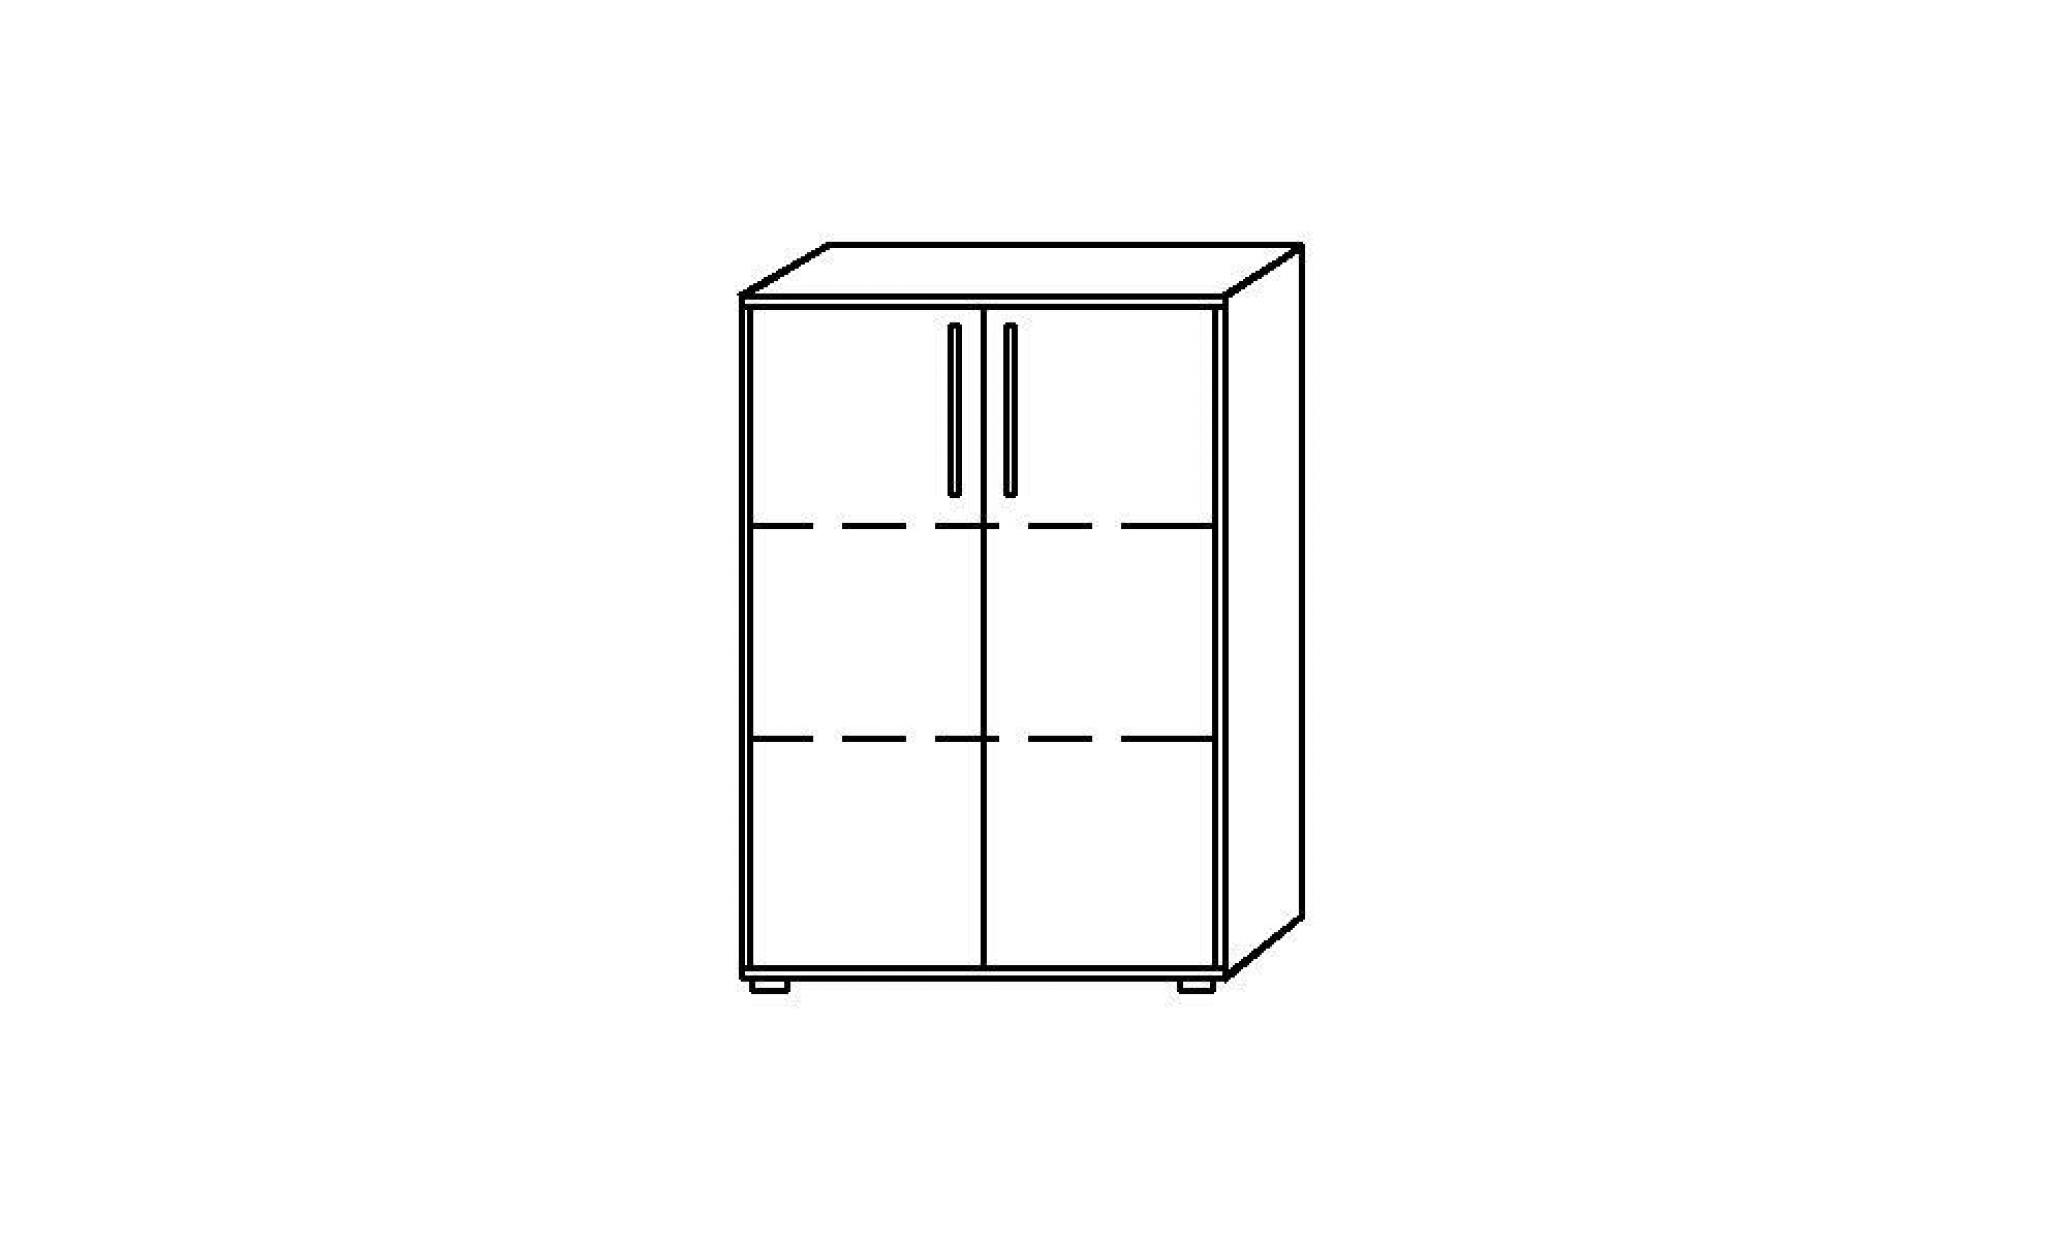 bianca armoire de bureau   h x l x p 1144 x 800 x 346 mm, 3 hauteurs de classeurs   gris clair   armoire armoire de bureau armoire pas cher